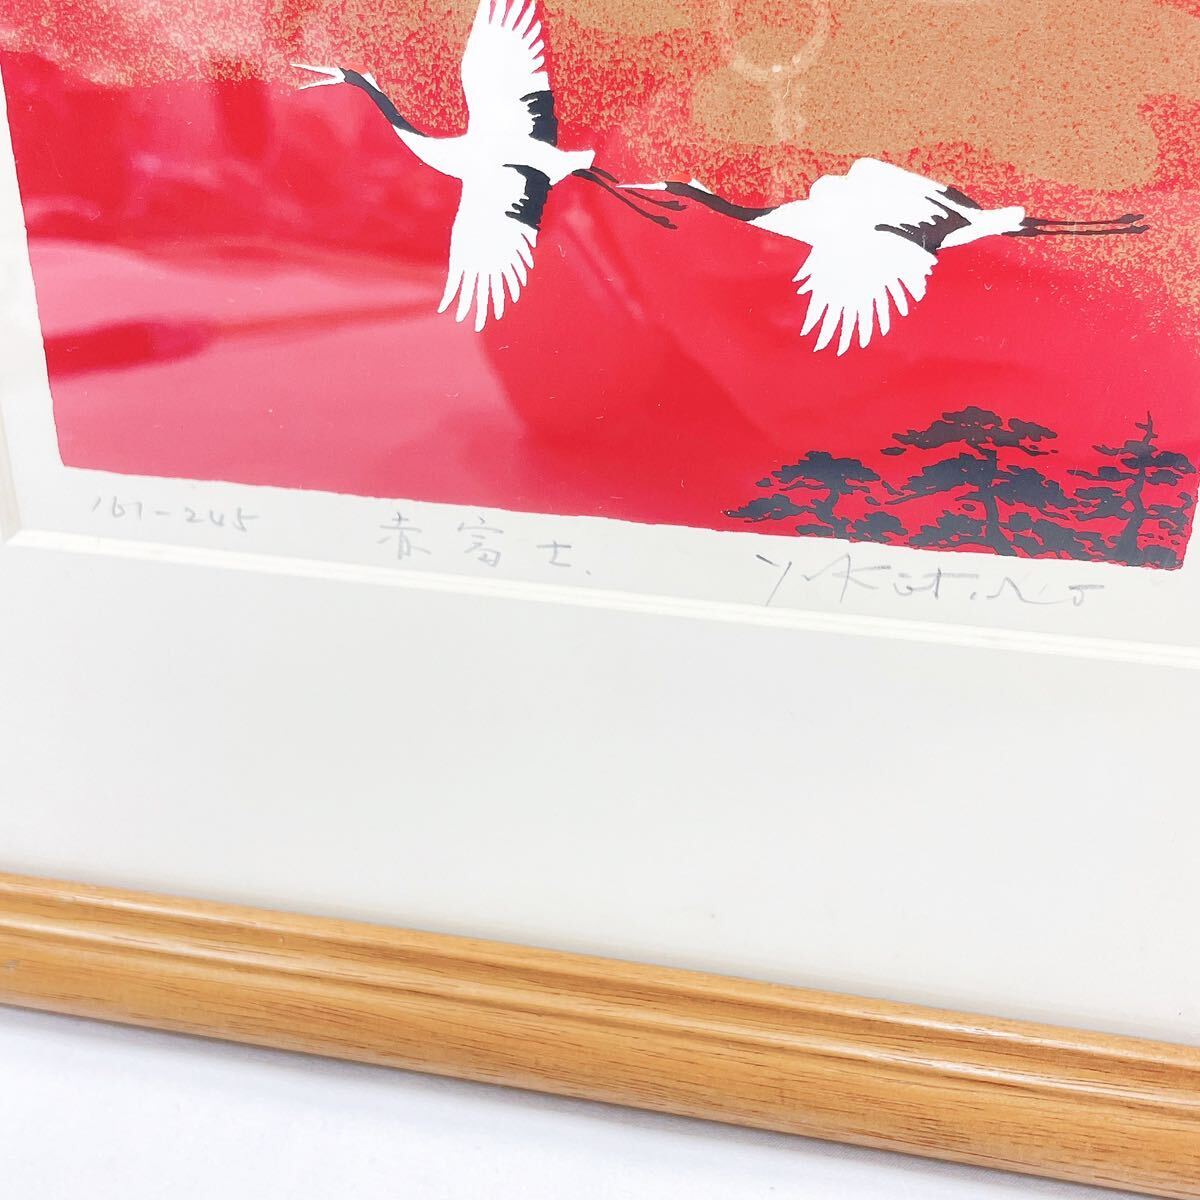 吉岡浩太郎 「赤富士」 シルクスクリーン 富士山 鶴 風景画 161-245 R店0430〇_画像3